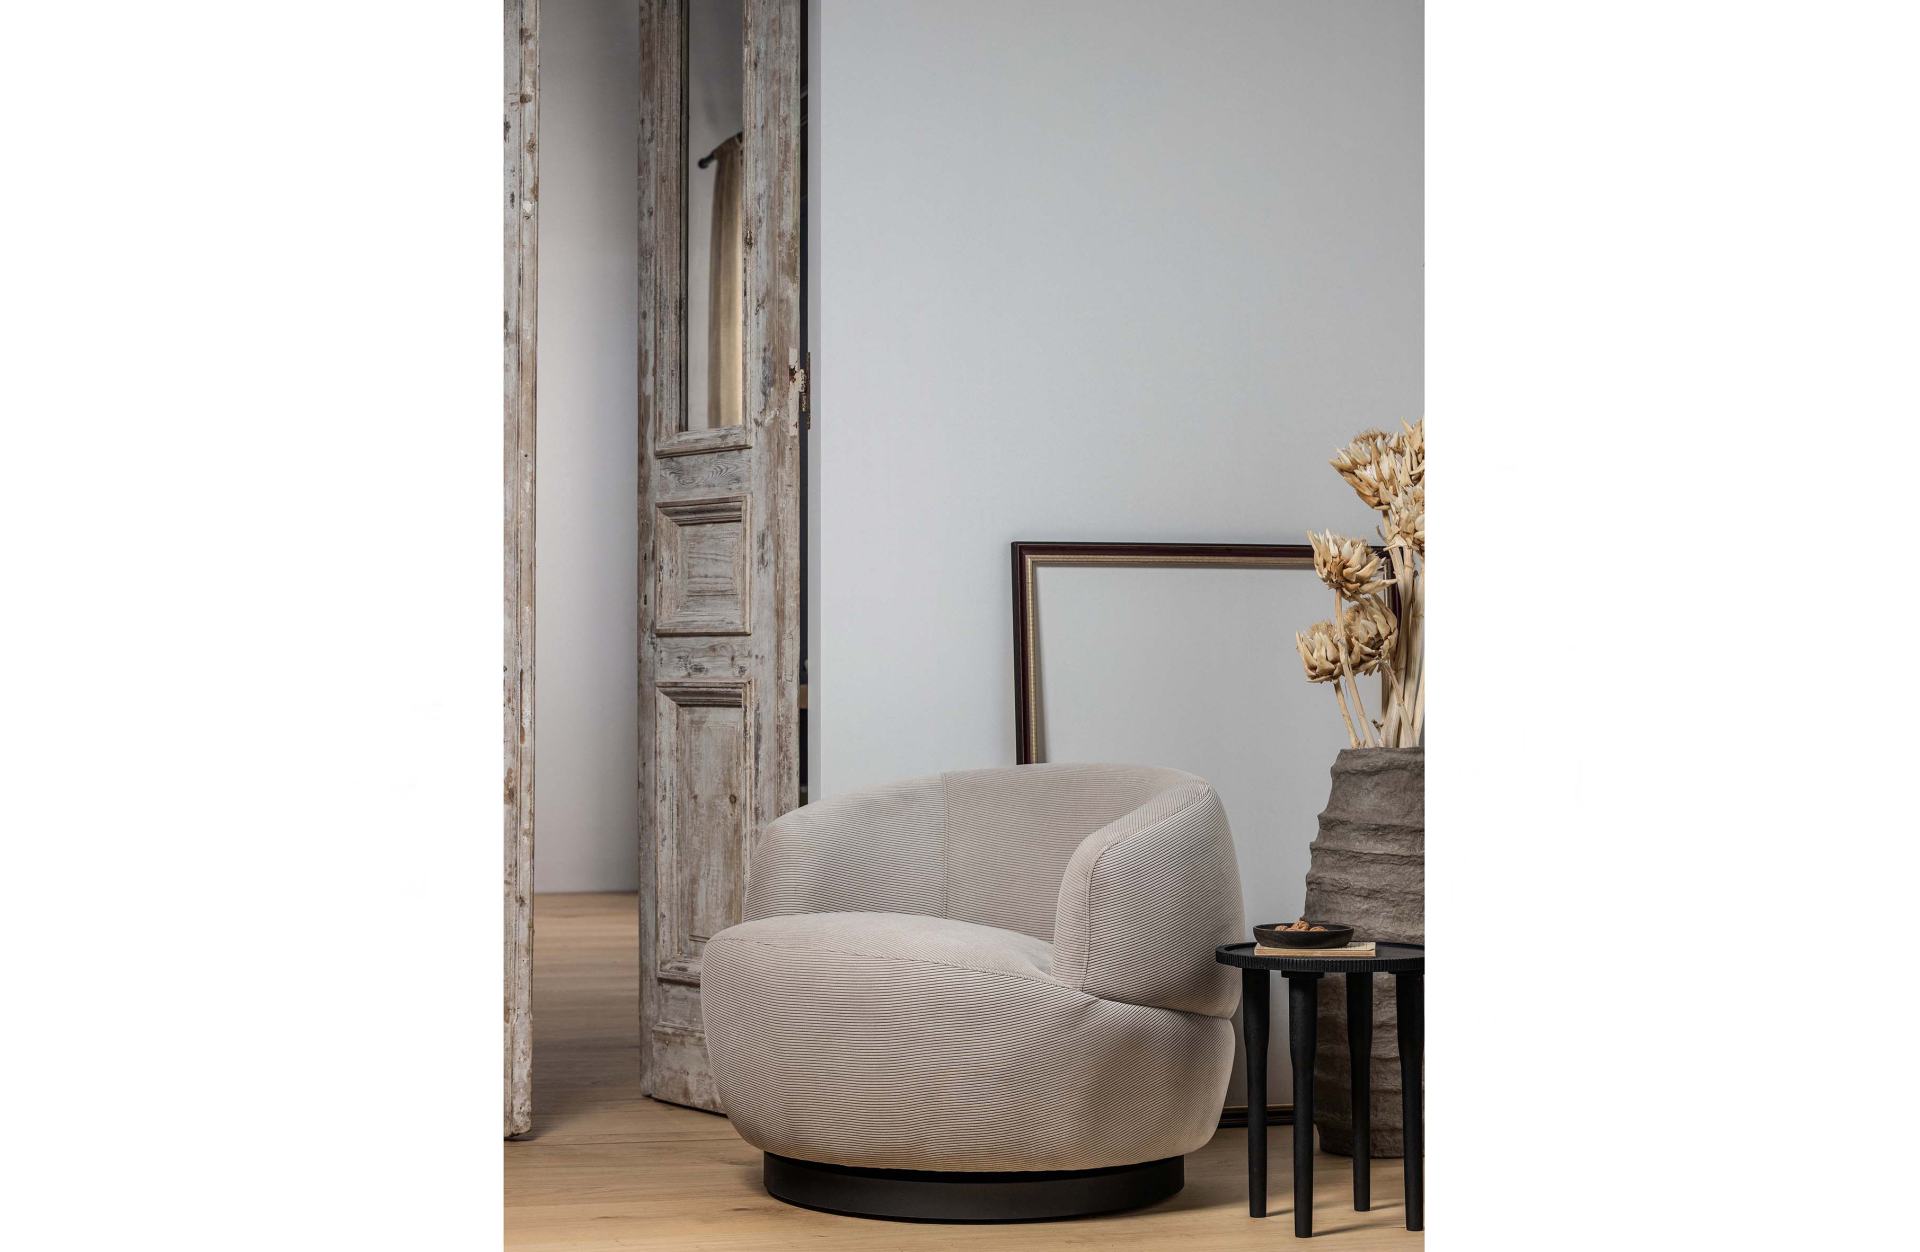 Der Sessel Woolly überzeugt mit seinem moderndem Design. Gefertigt wurde er aus Rib-Cord, welches einen Beige Farbton besitzt. Das Gestell ist aus Metall und besitzt eine Drehfunktion, außerdem ist es in einer schwarzen Farbe. Die Sitzhöhe beträgt 46 cm.